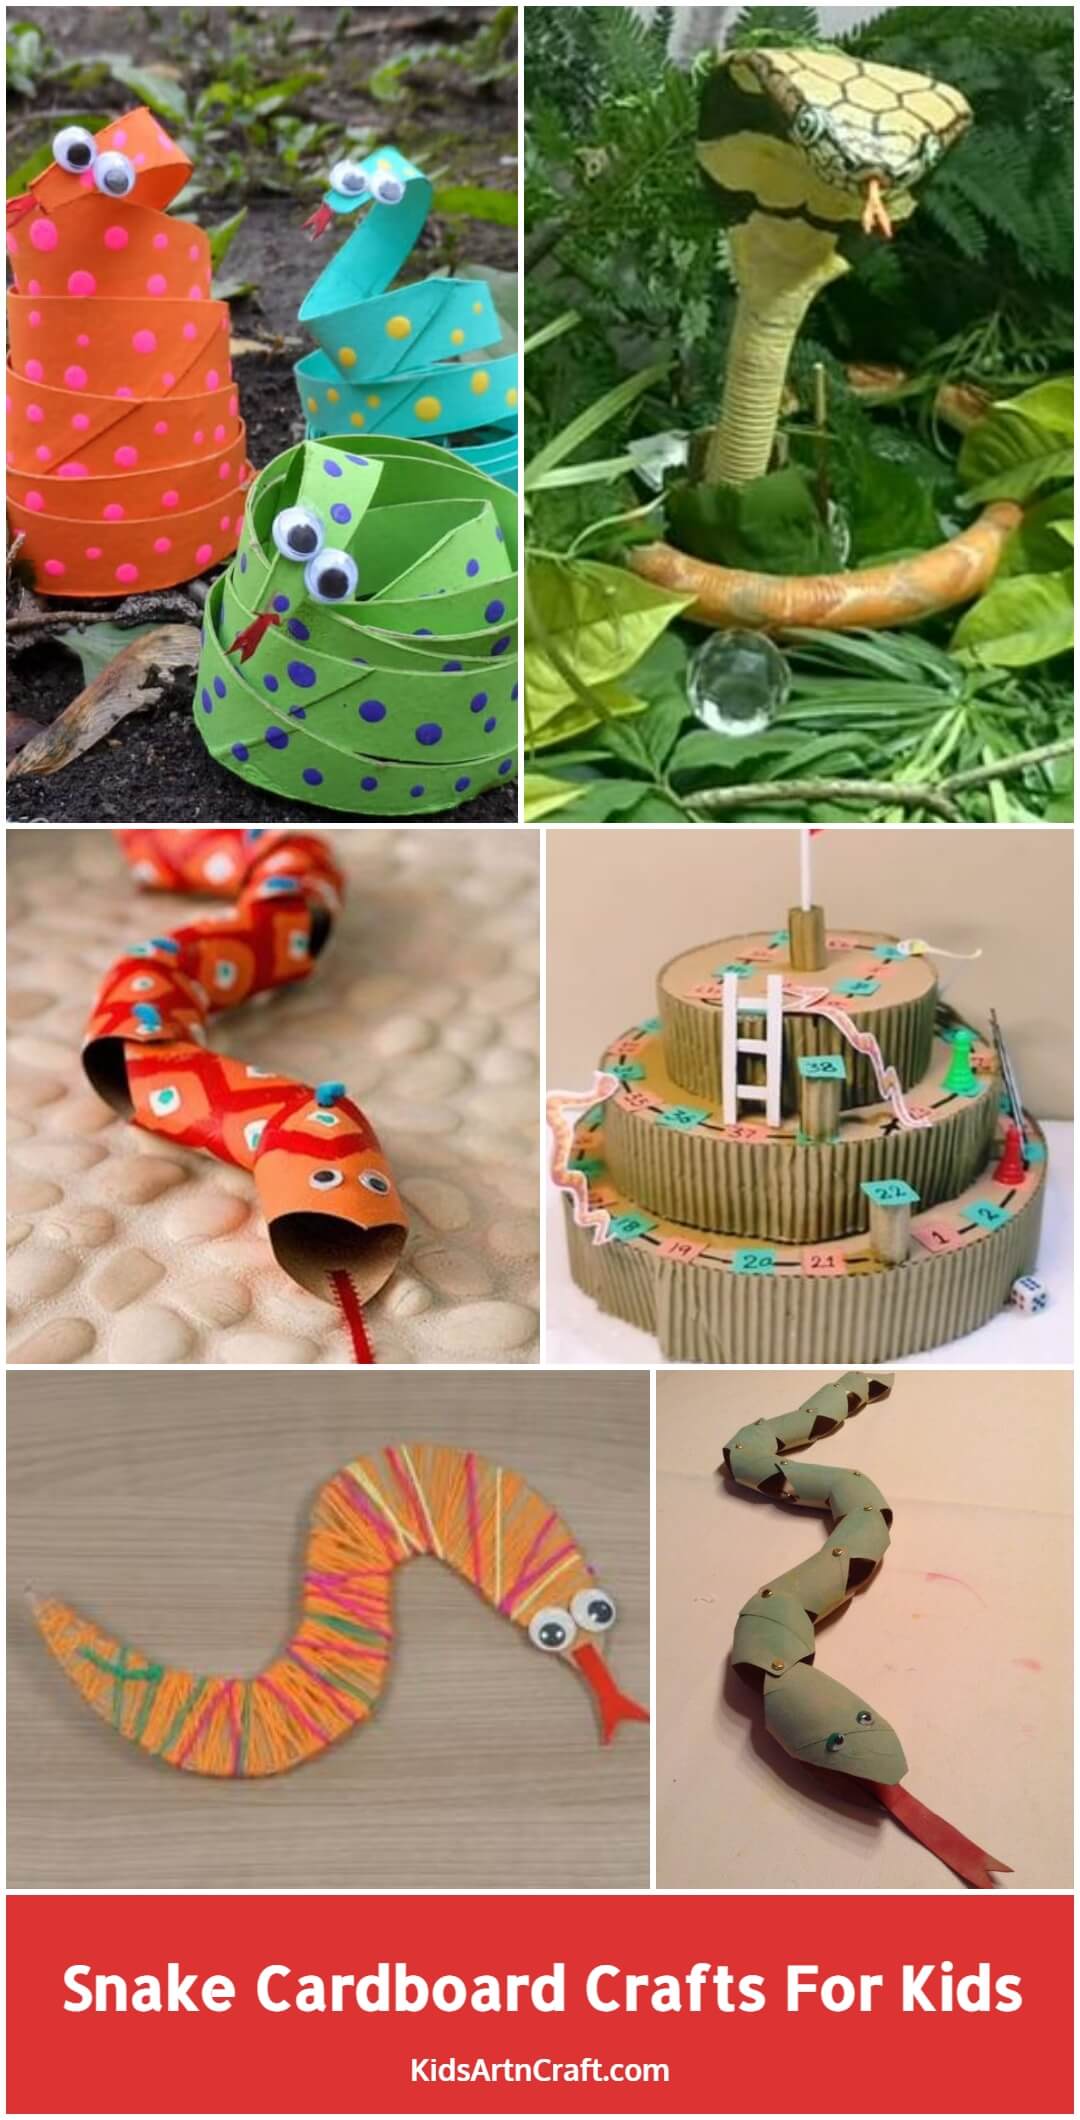 Snake Cardboard Crafts For Kids